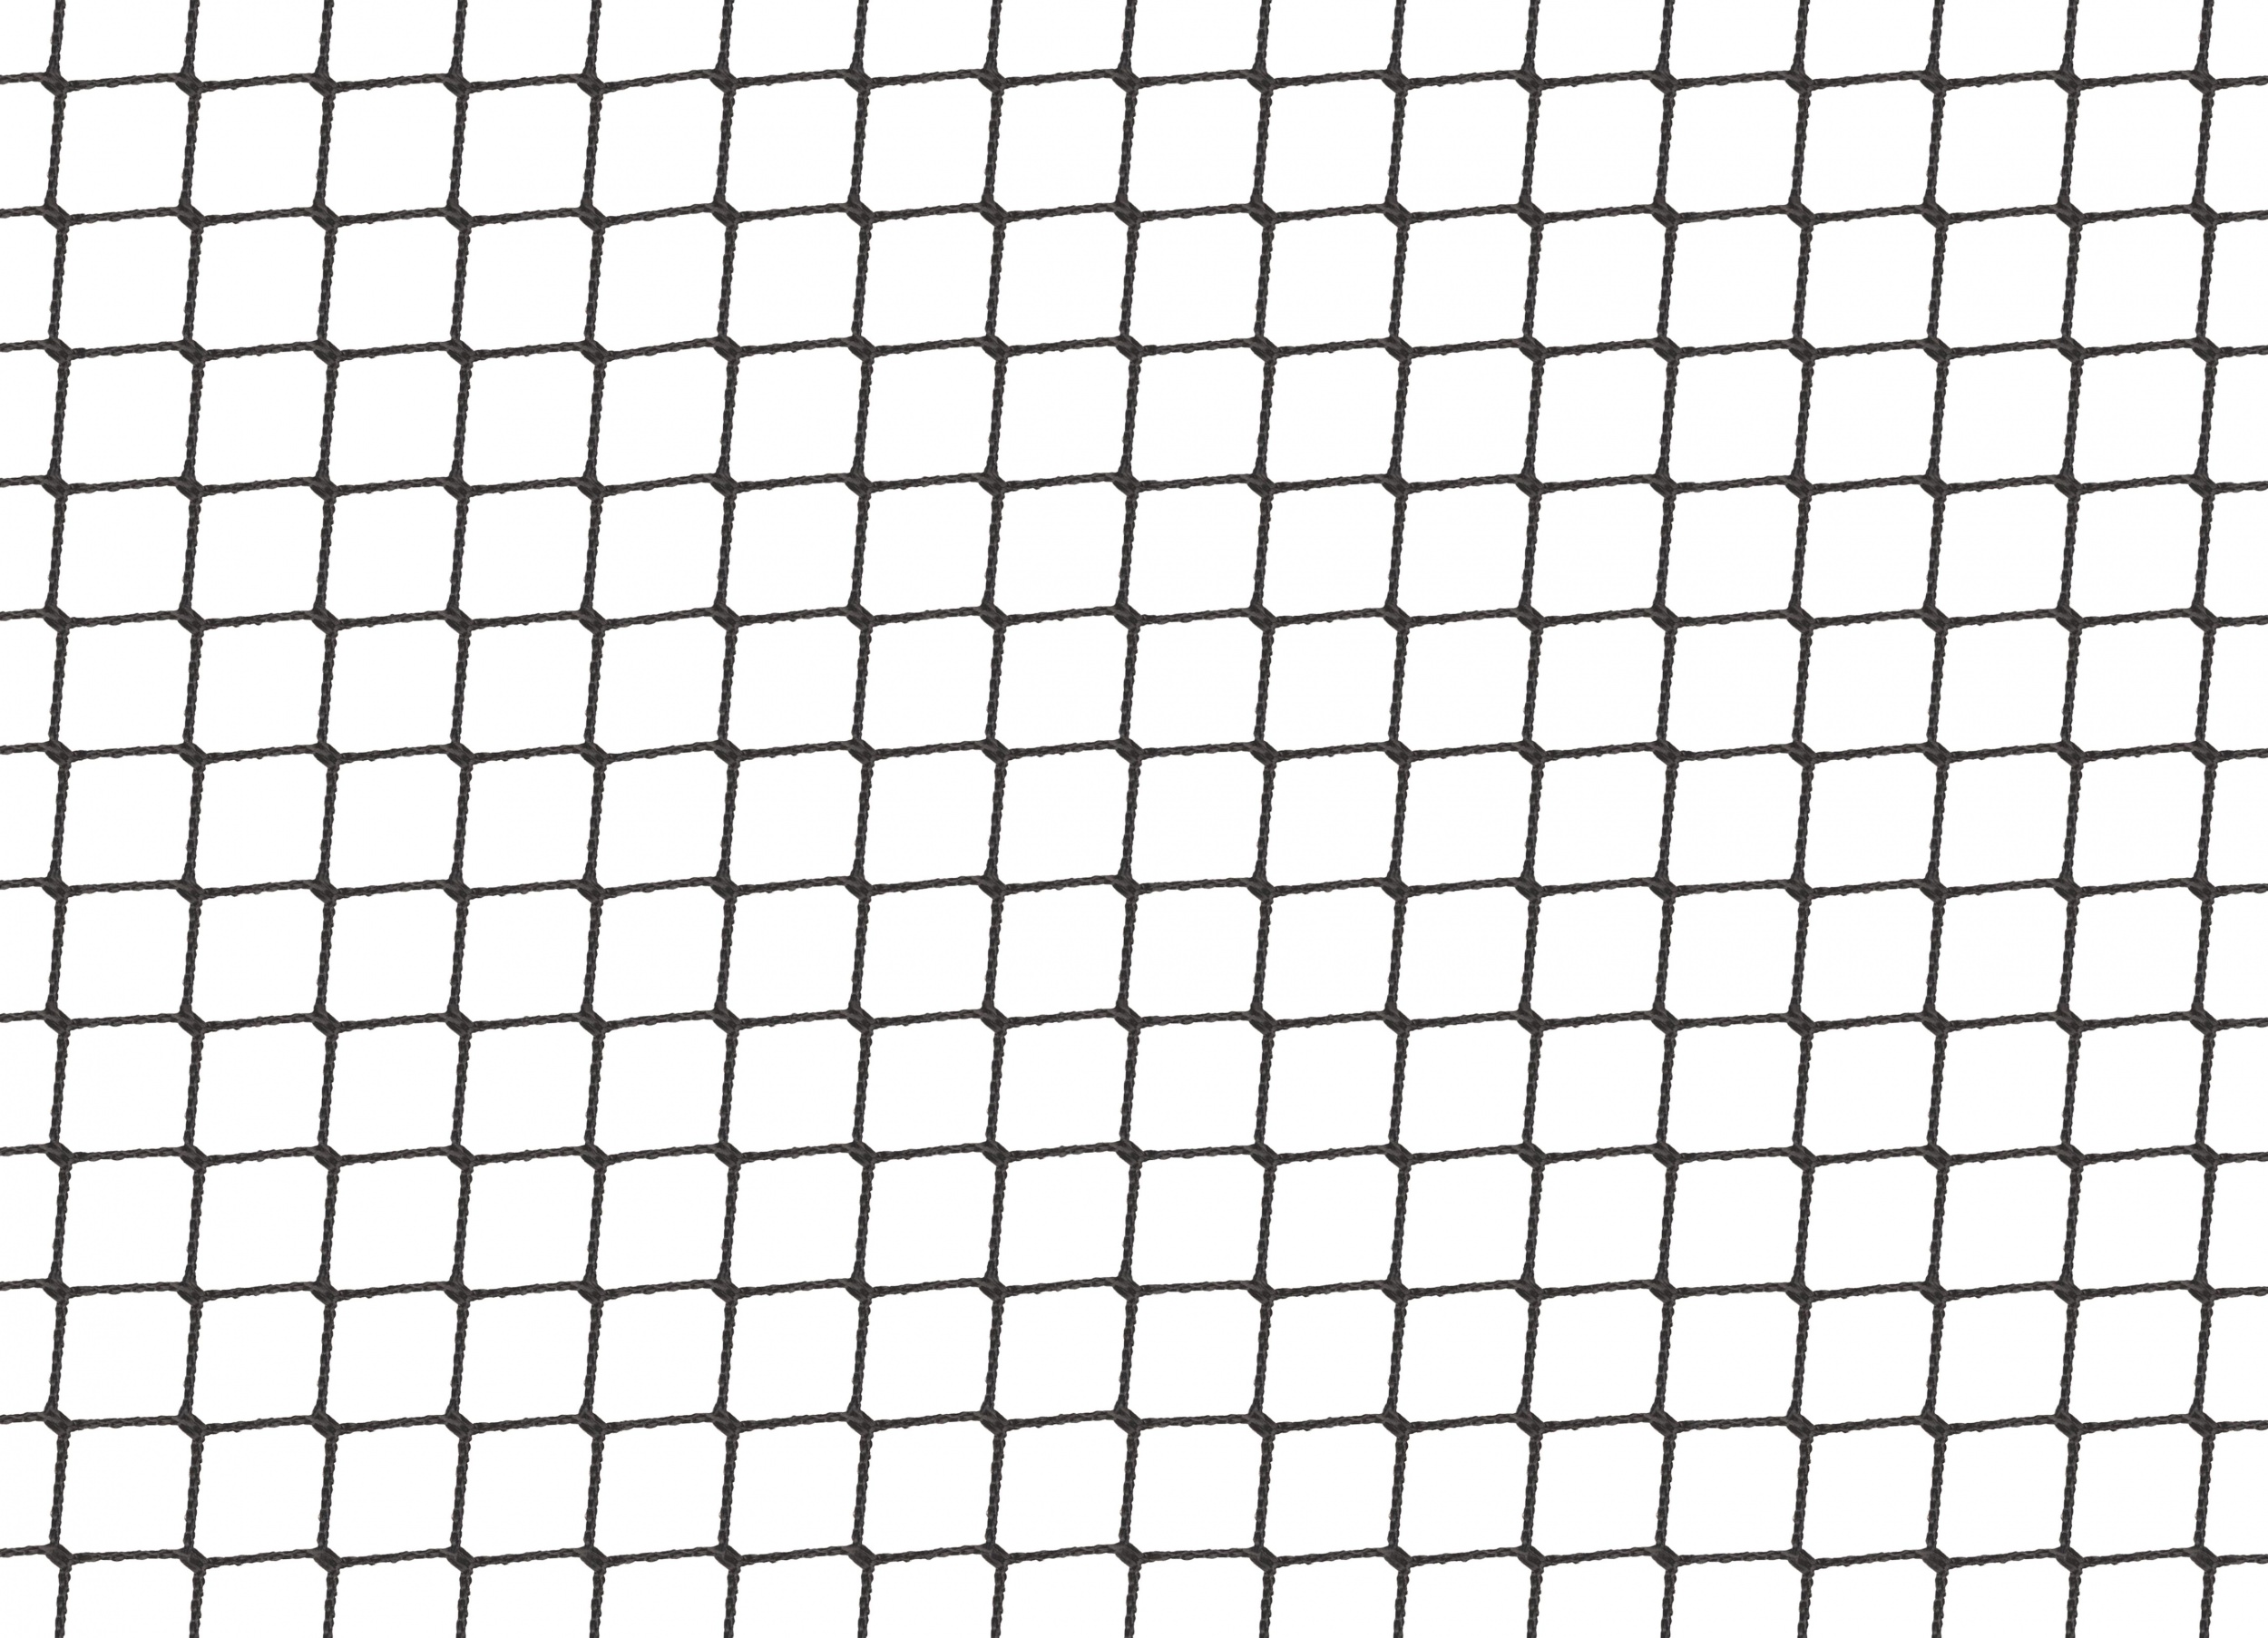 Vogelschutznetz Vogelnetz  7 m x 25 m Volierennetz schwarz  Maschenweite 5 cm 